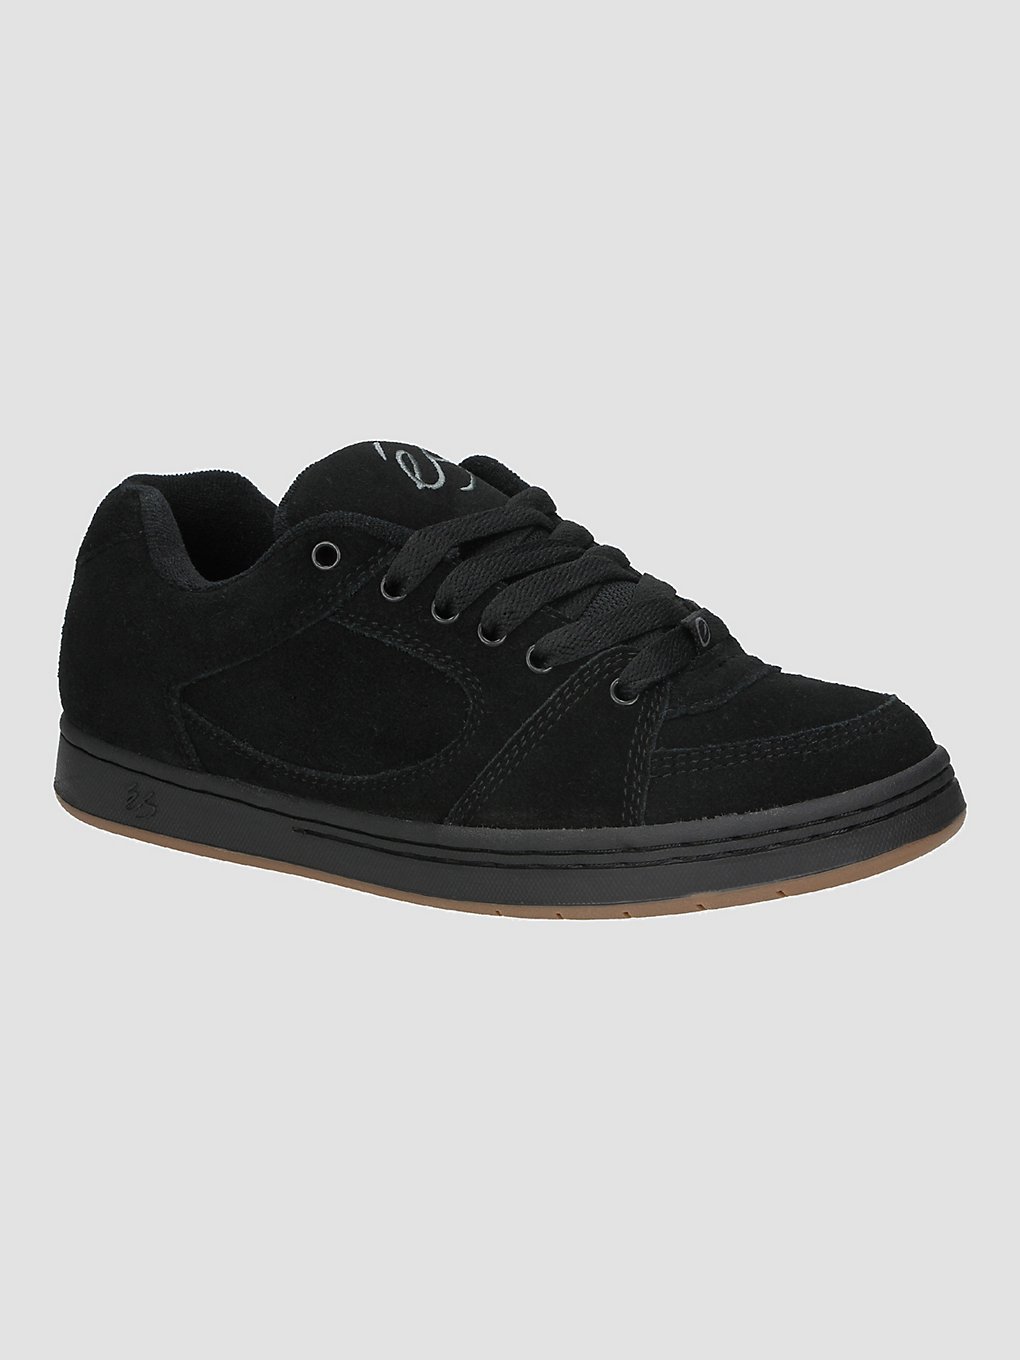 Es Accel OG Skate Shoes black kaufen